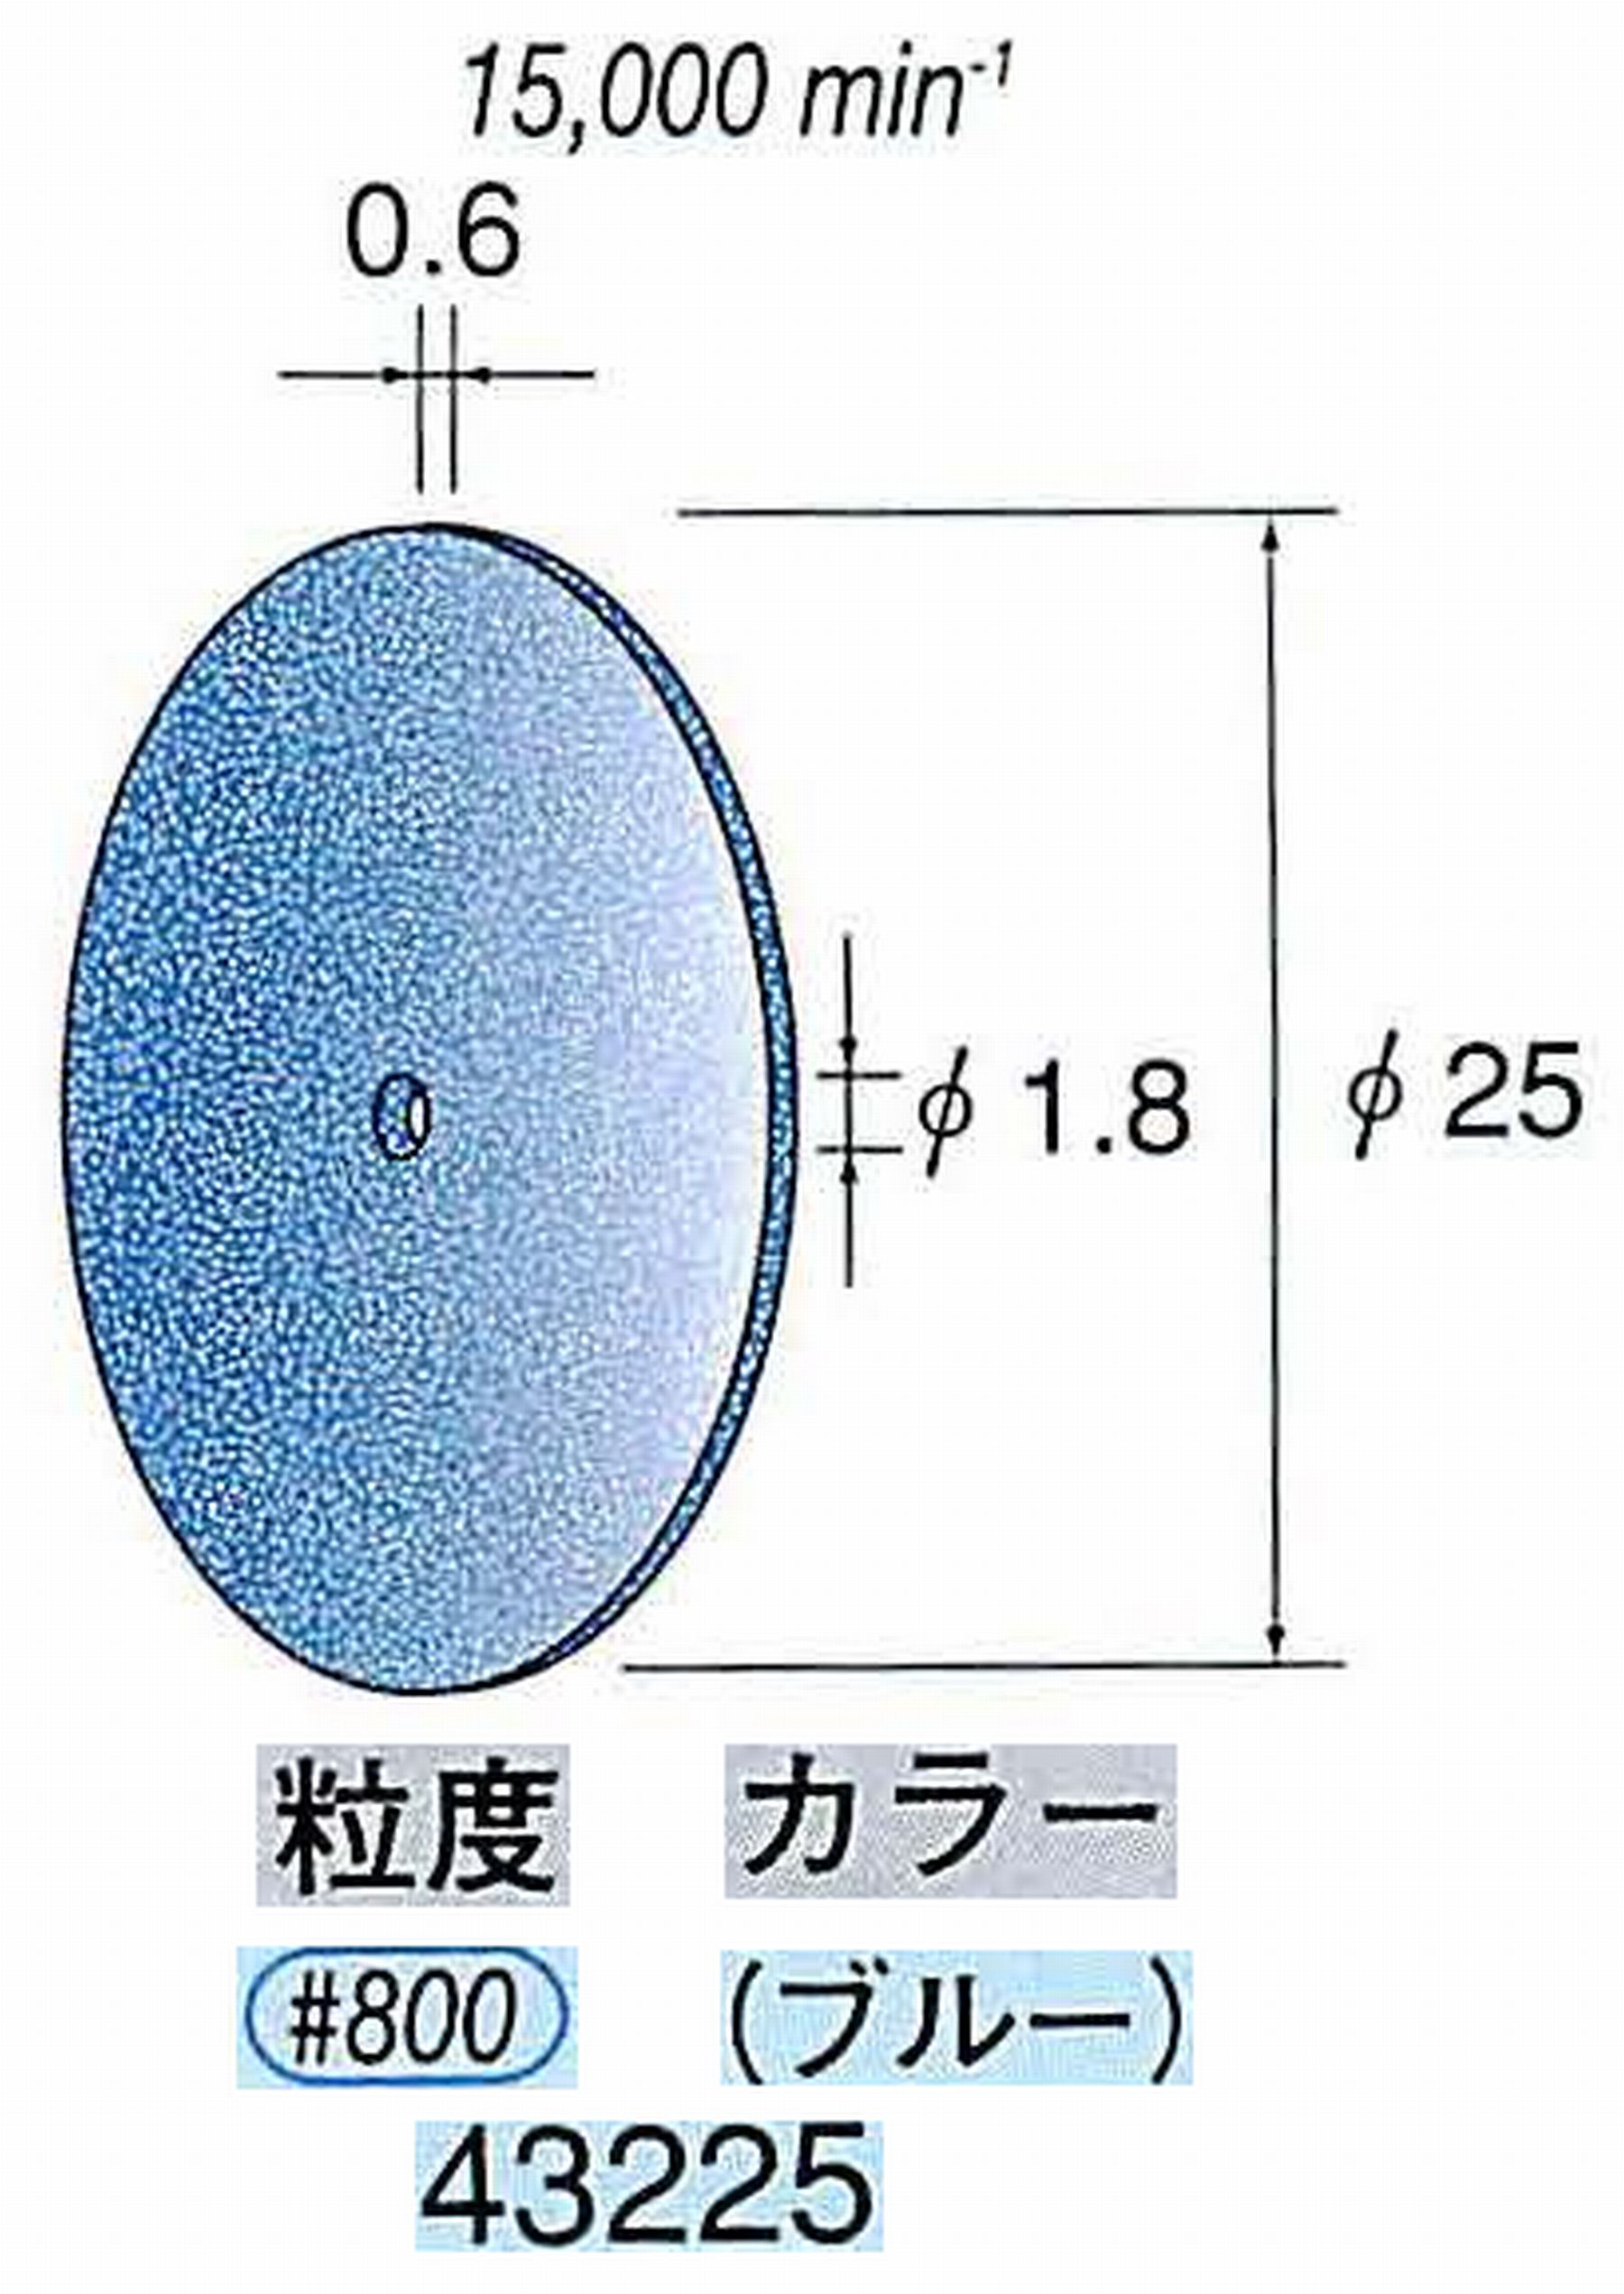 ナカニシ/NAKANISHI セラファイバー砥石ディスク(カラー ブルー) 43225